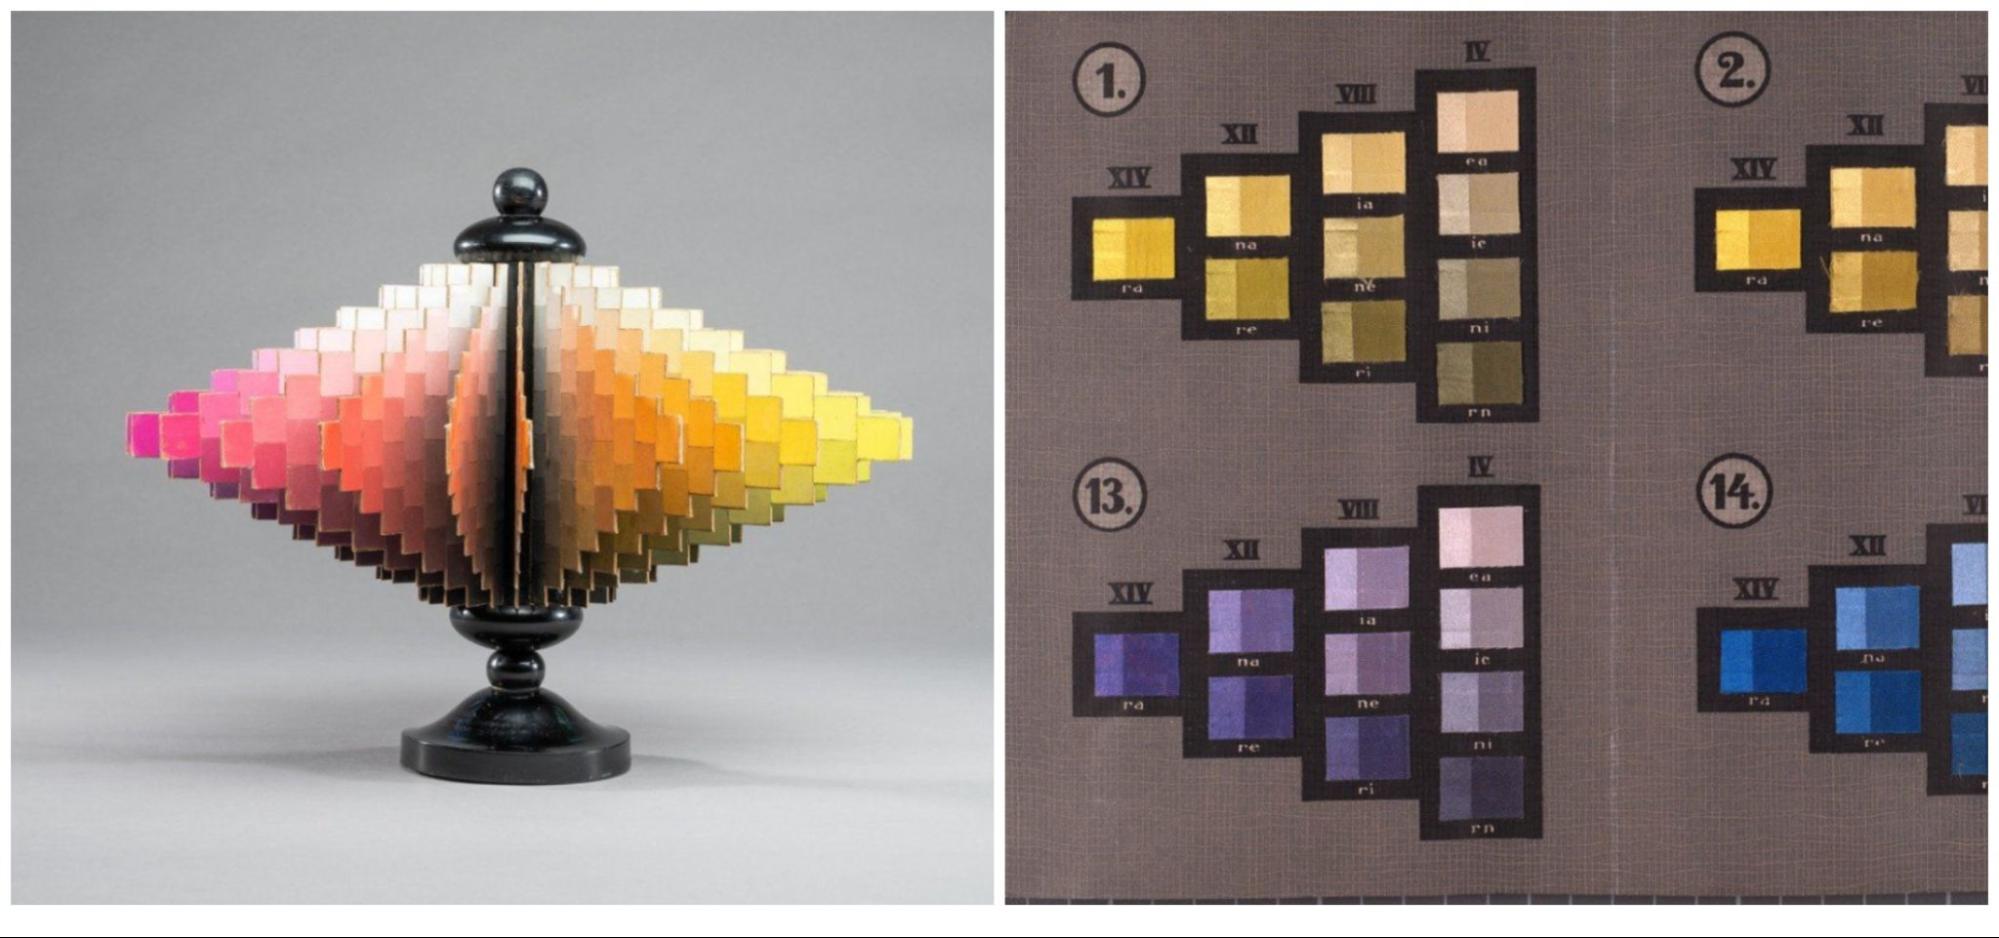 Цветовой круг Оствальда или, правильнее сказать, цветной конус Освальда (Ostwaldscher Doppelkegel) &mdash; это объемная модель из 24 цветов, разбитых на сегменты. Каждый цвет Оствальд поделил на восемь ступеней, различающихся по светлоте и насыщенности. На фото слева цветовая модель Оствальда от 1918 года. На фото справа ступени одного цвета из модели Оствальда, 1928 год.